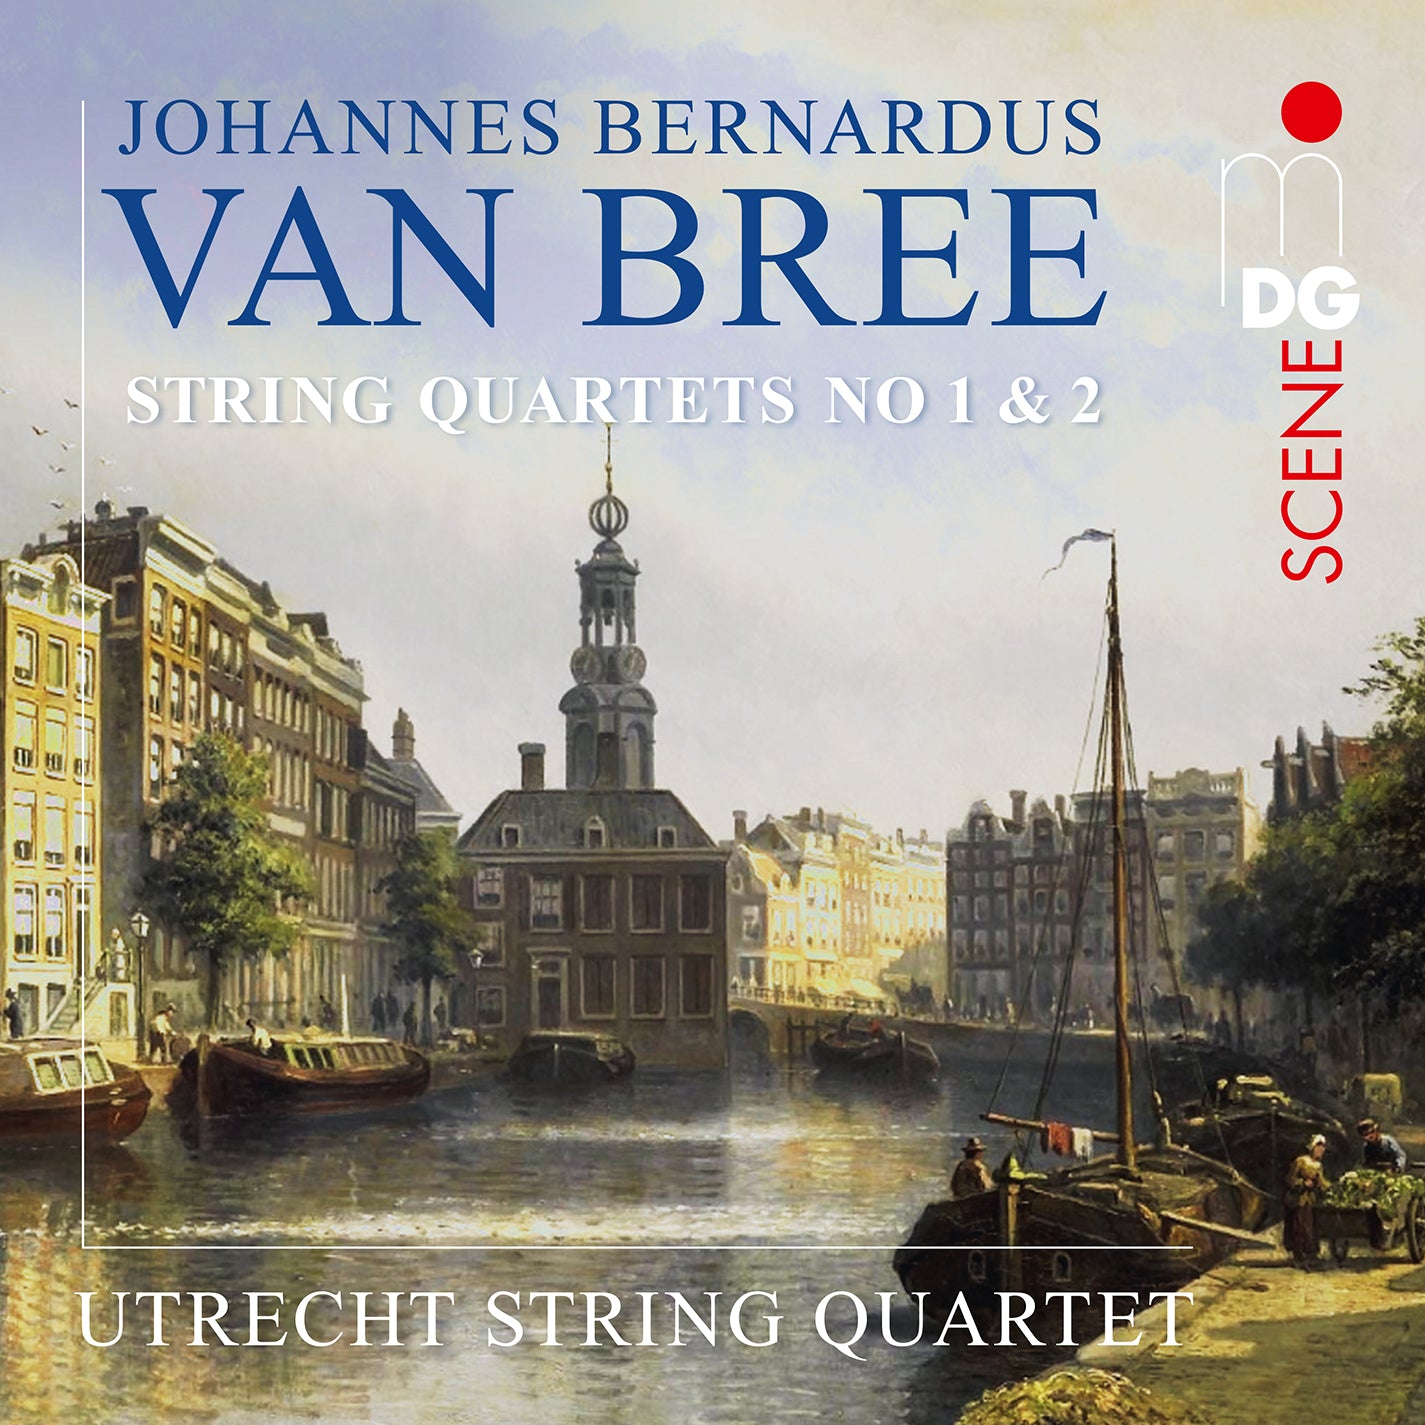 Van Bree: String Quartets Nos. 1 & 2